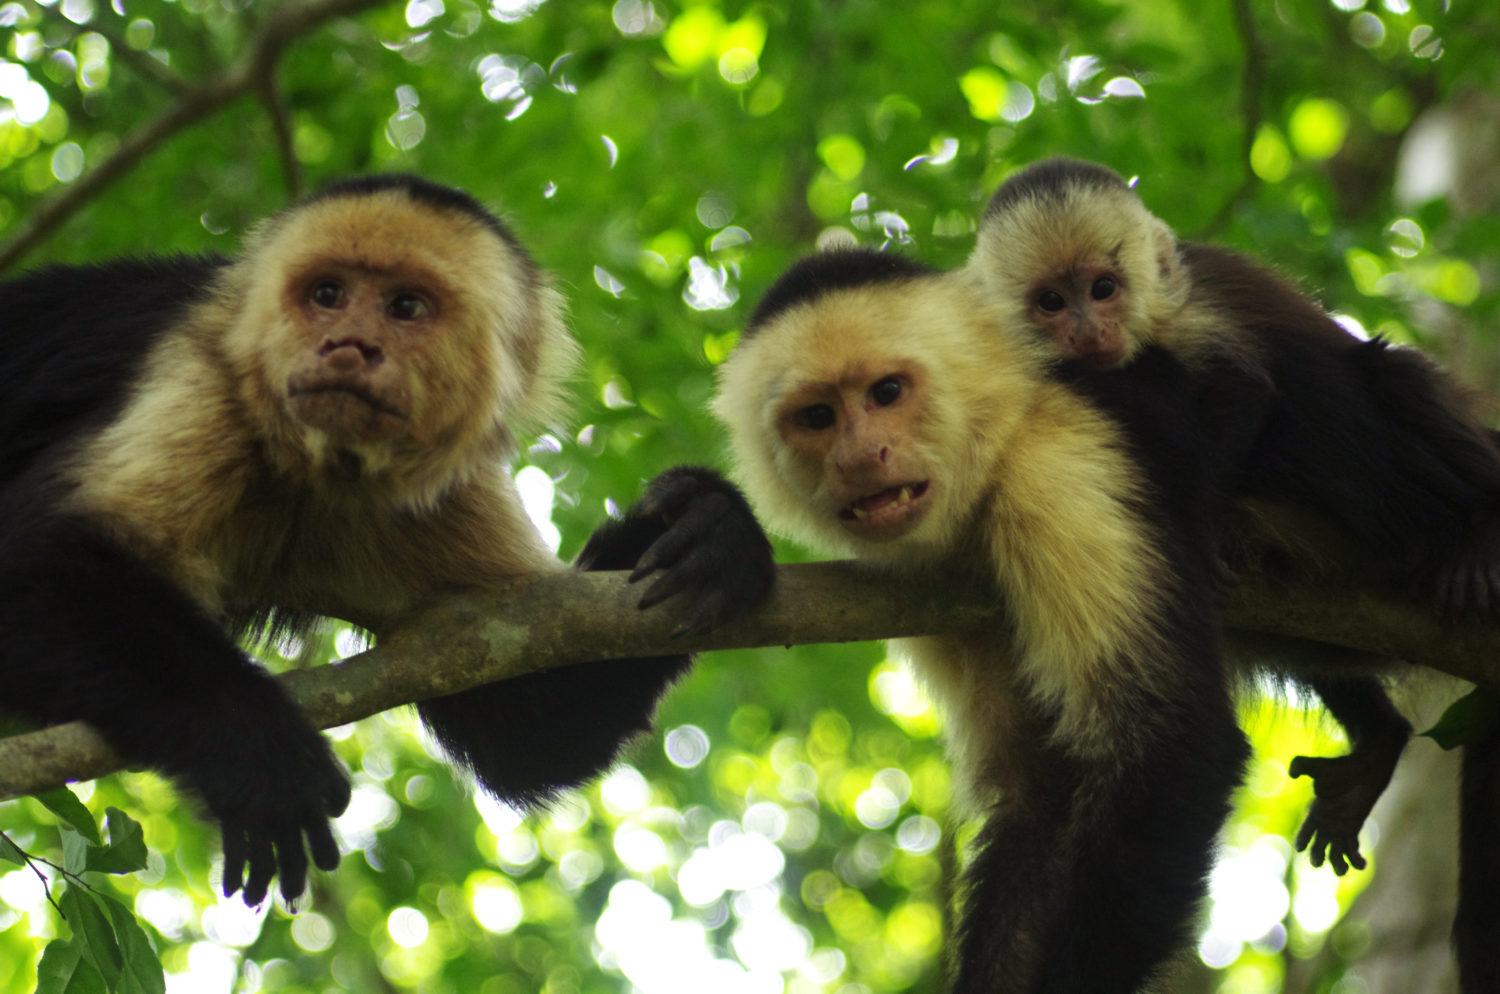 white capuchin monkey